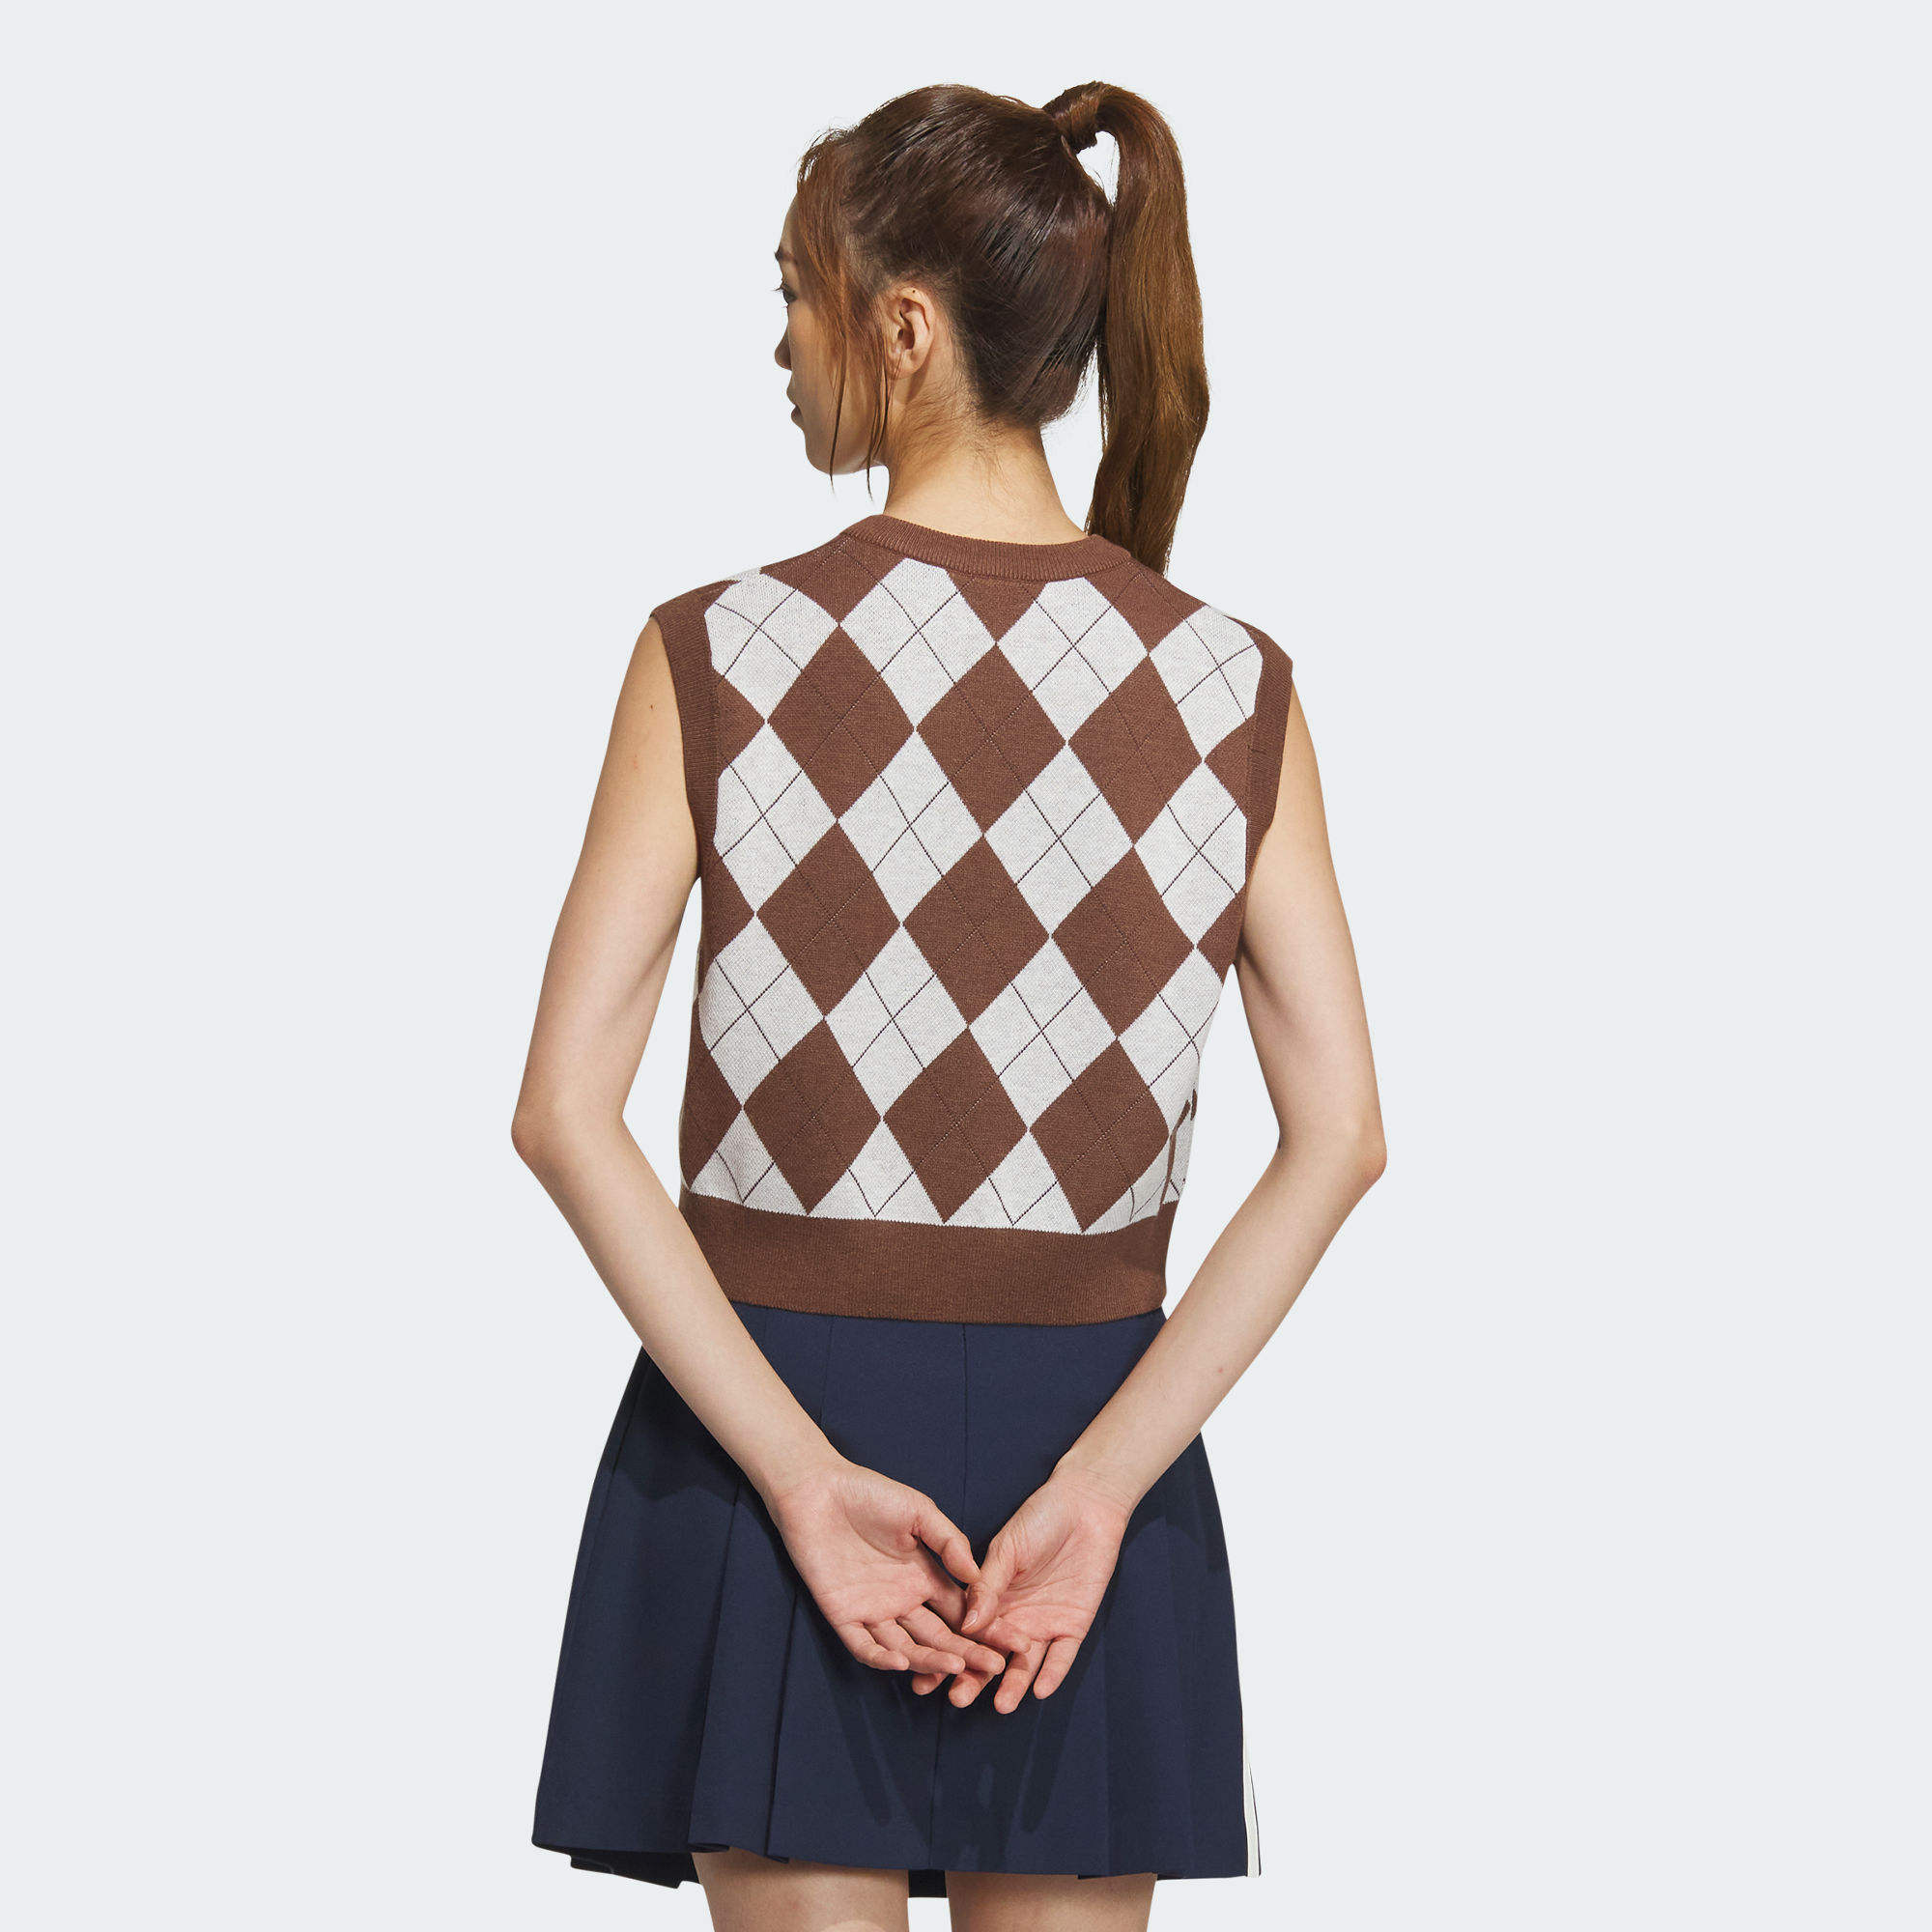 校園風針織背心- 咖啡色| 女子| adidas(愛迪達)香港官方網上商店